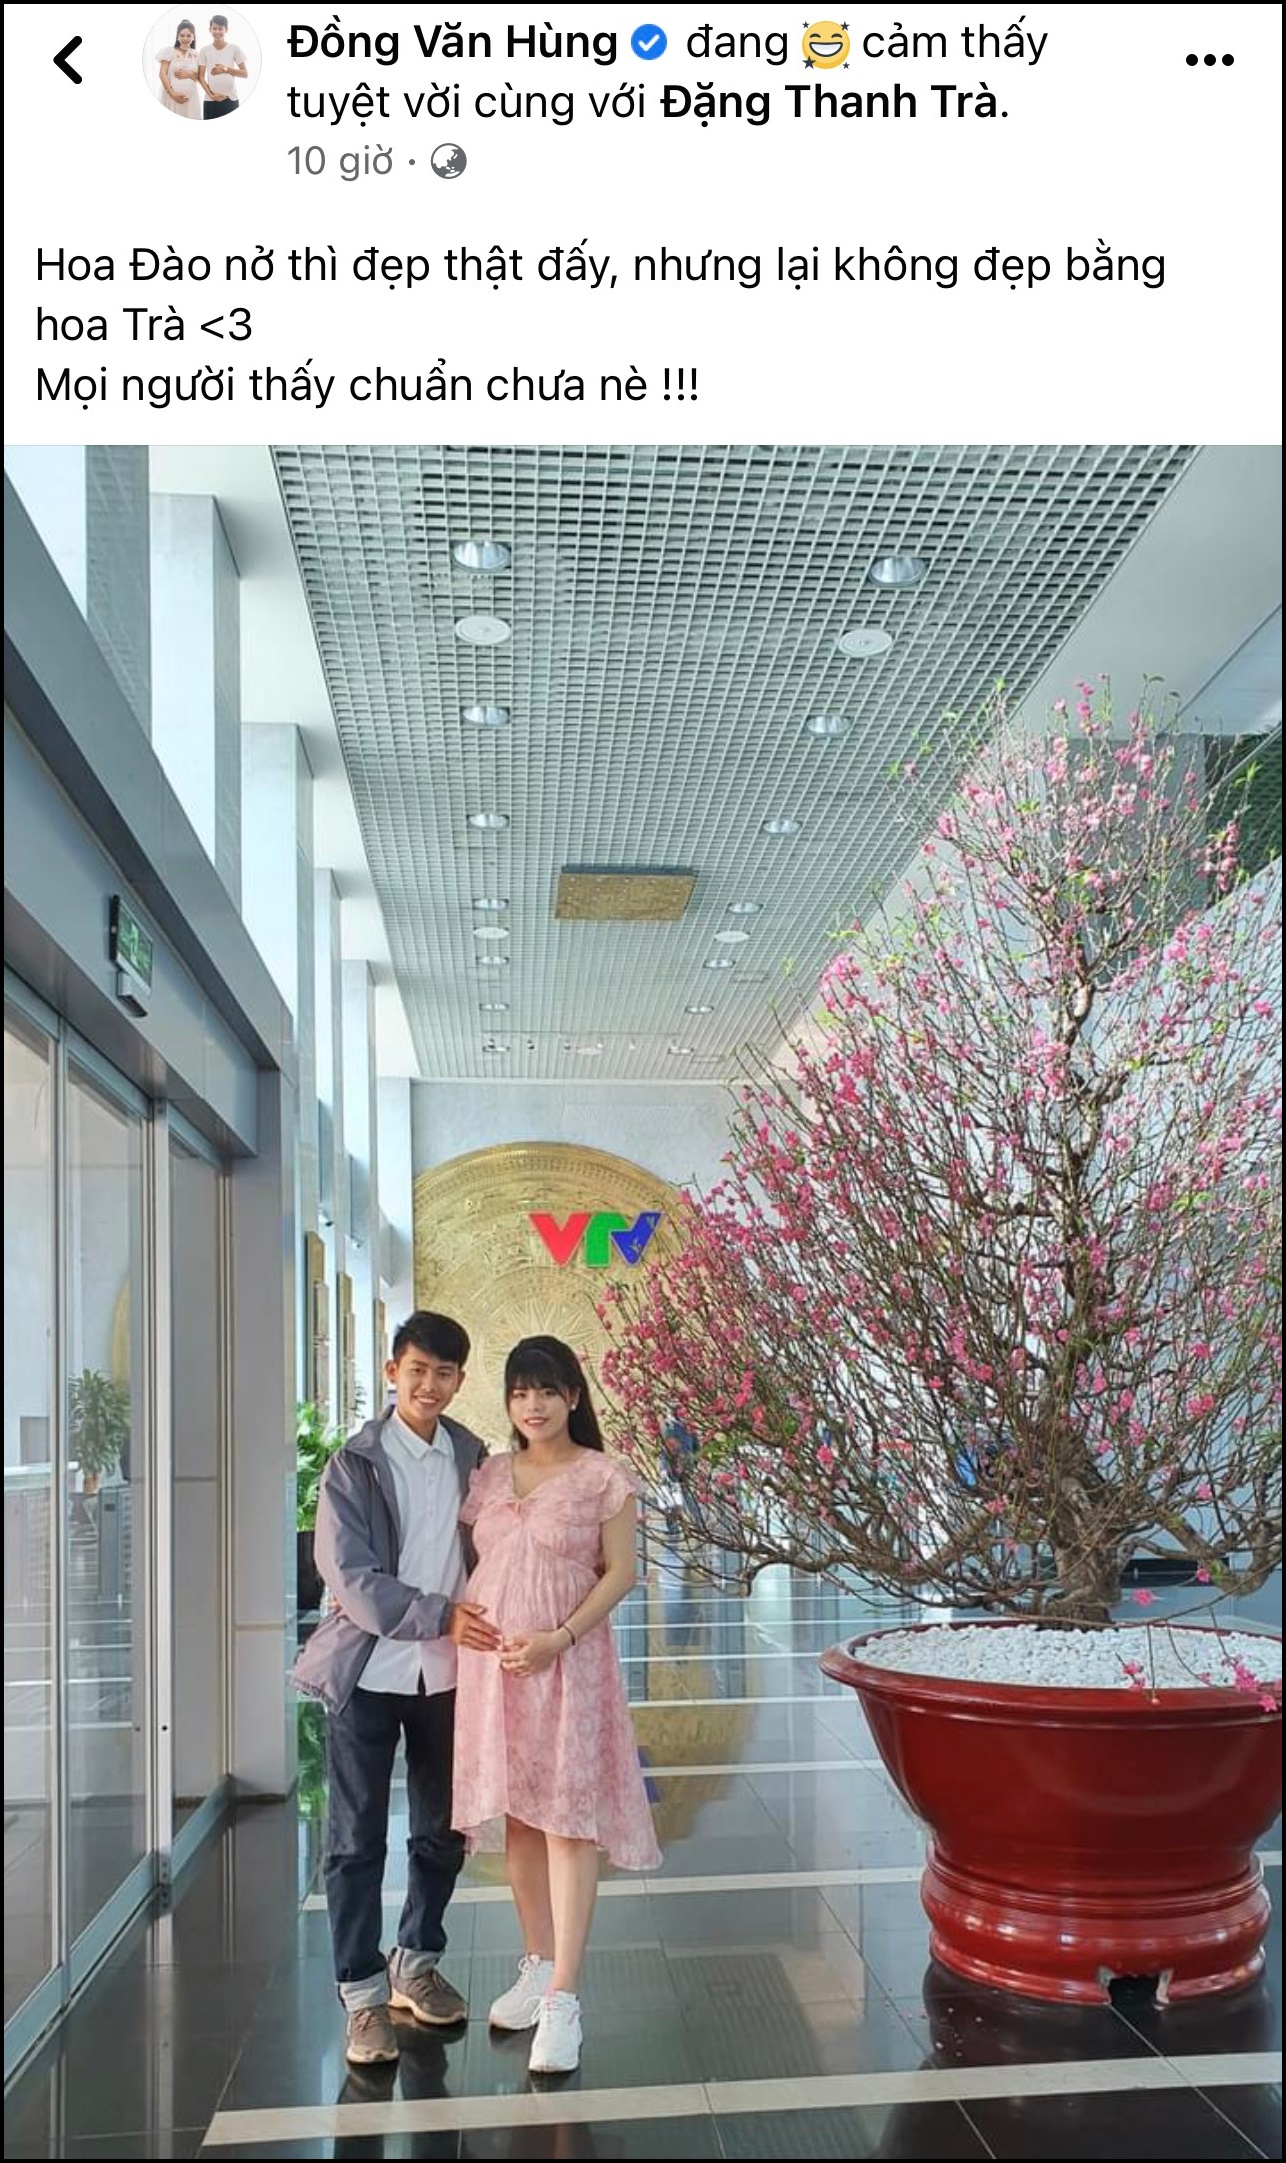 Hoa đào luôn là biểu tượng tuyệt đẹp của mùa xuân và đất nước Việt Nam. Bức ảnh này sẽ giúp bạn thưởng thức vẻ đẹp toát lên từ cây đào trắng tinh khôi cùng những bông hoa đỏ rực rỡ.